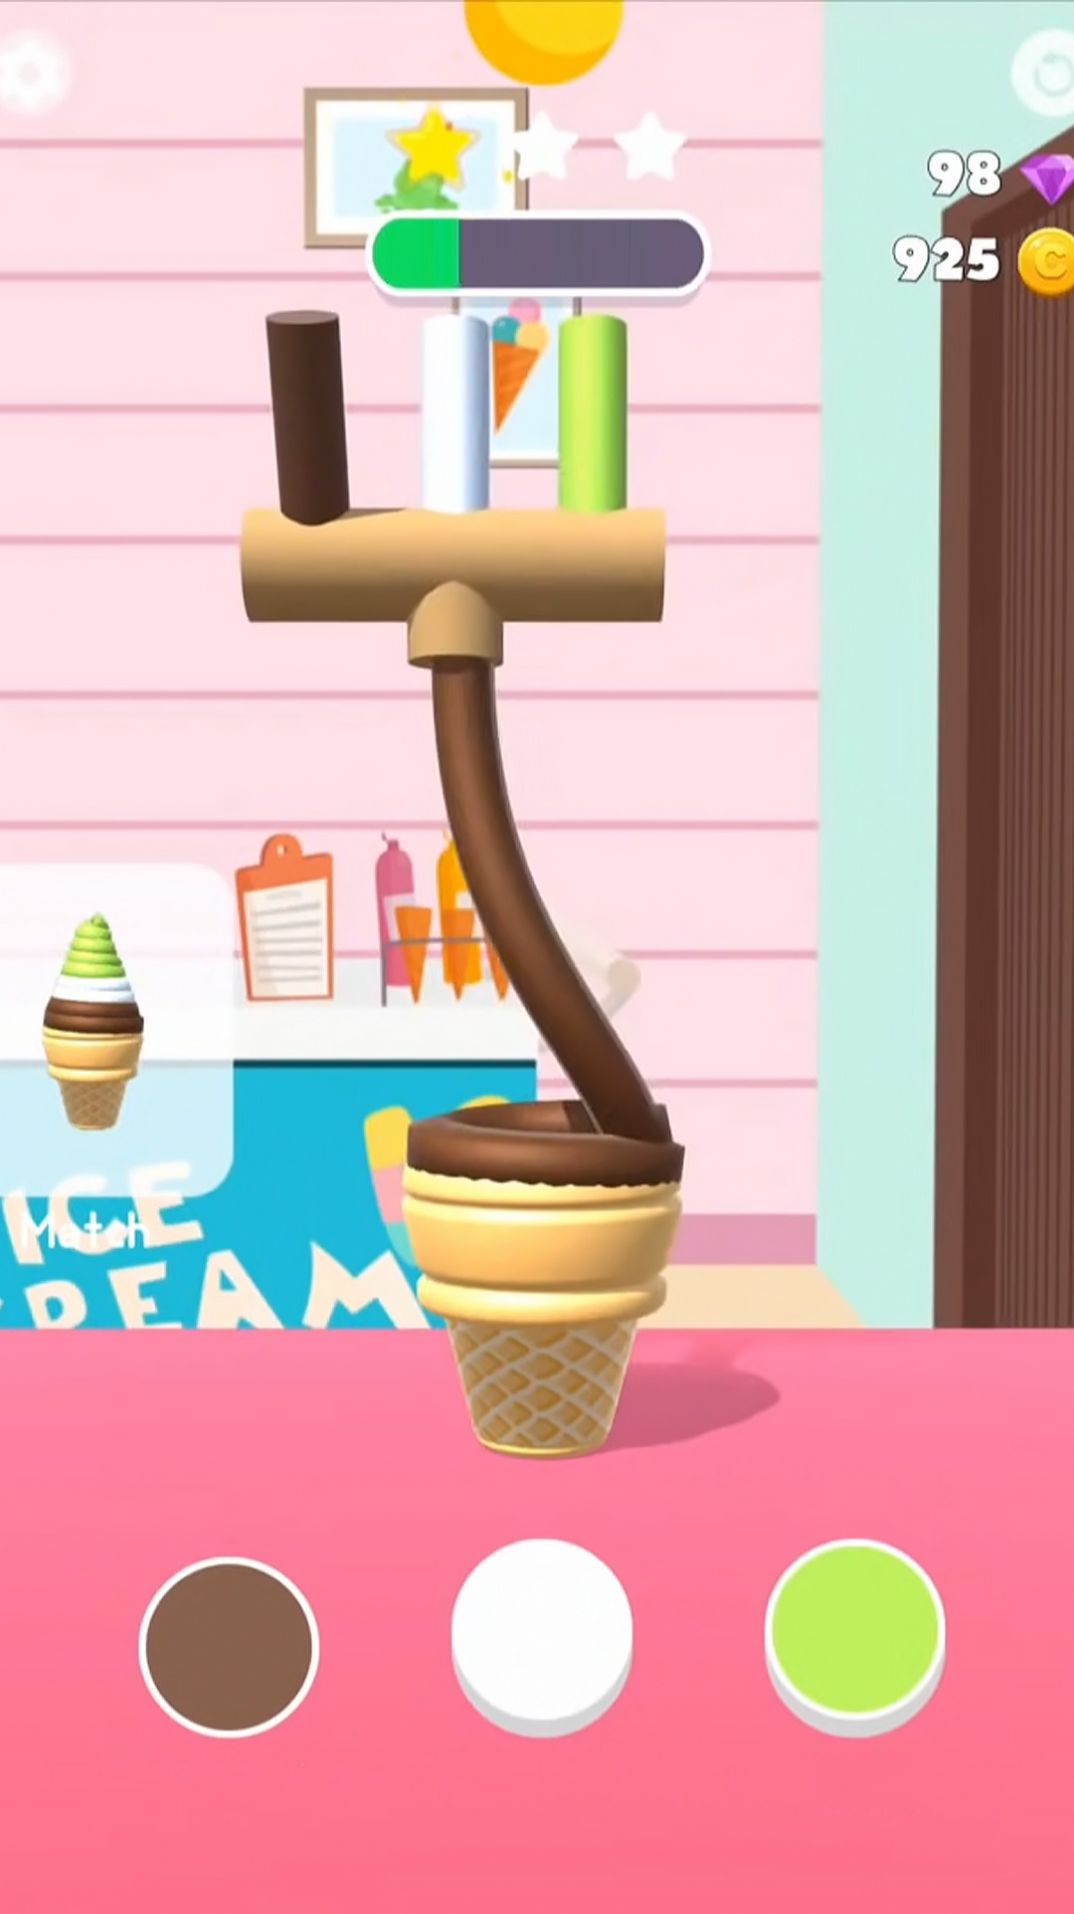 美味冰淇淋屋游戏图1